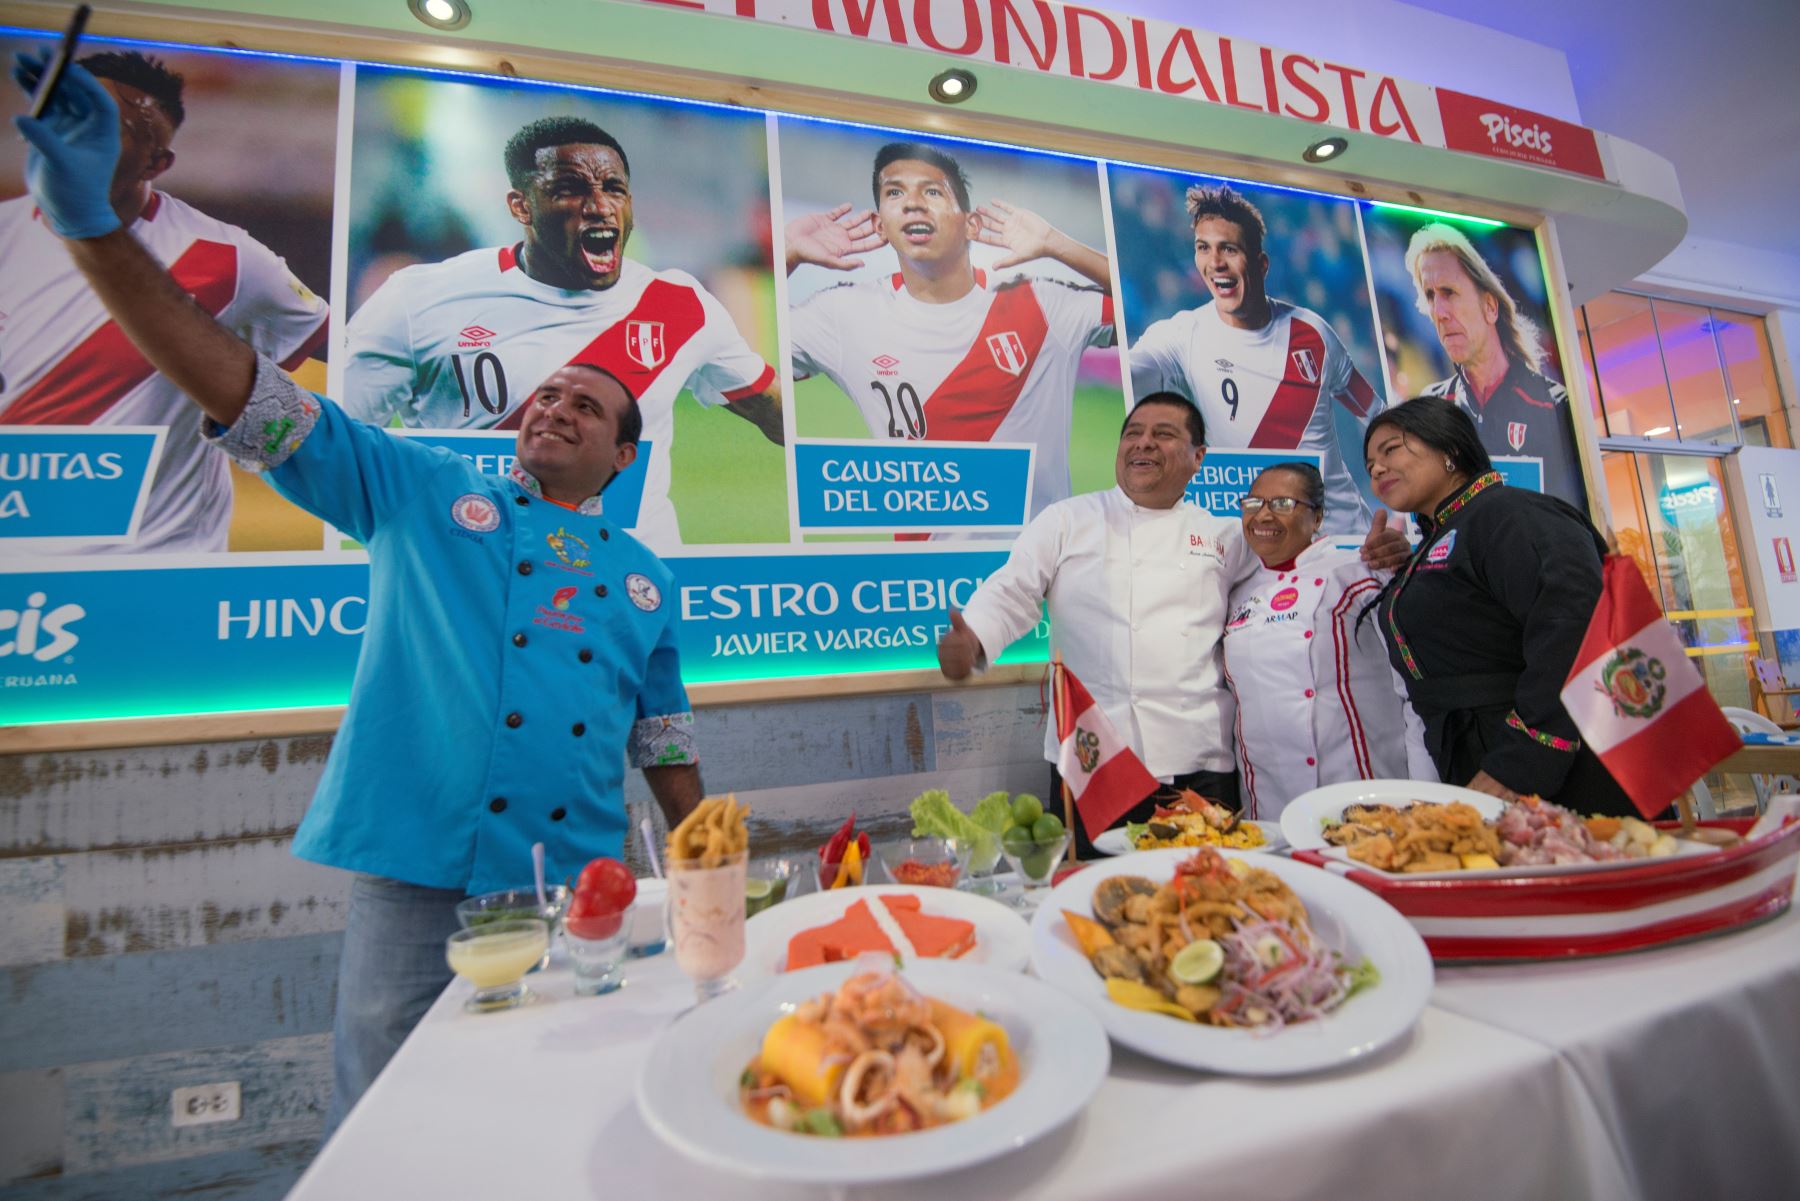 La gastronomía peruana está adaptando sus platos típicos a la fiebre de la próxima Copa Mundial de la FIFA 2018. Foto: AFP